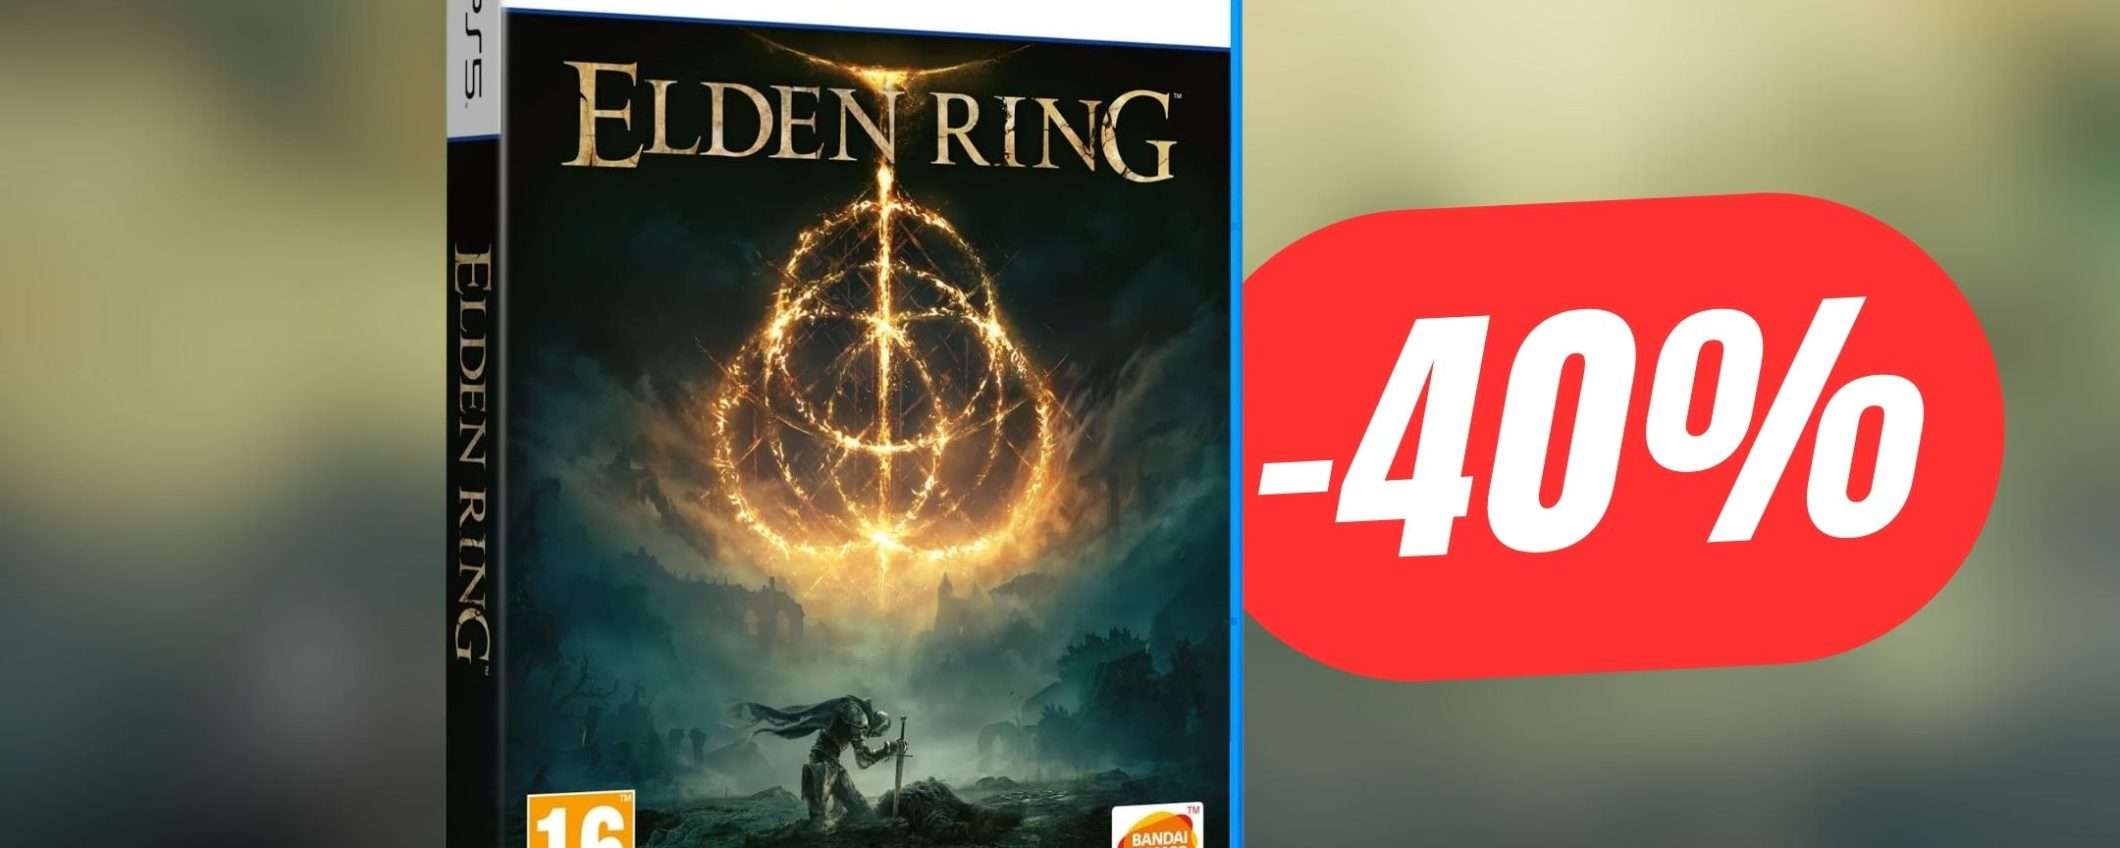 Elden Ring per PS5 è scontato del 40%!